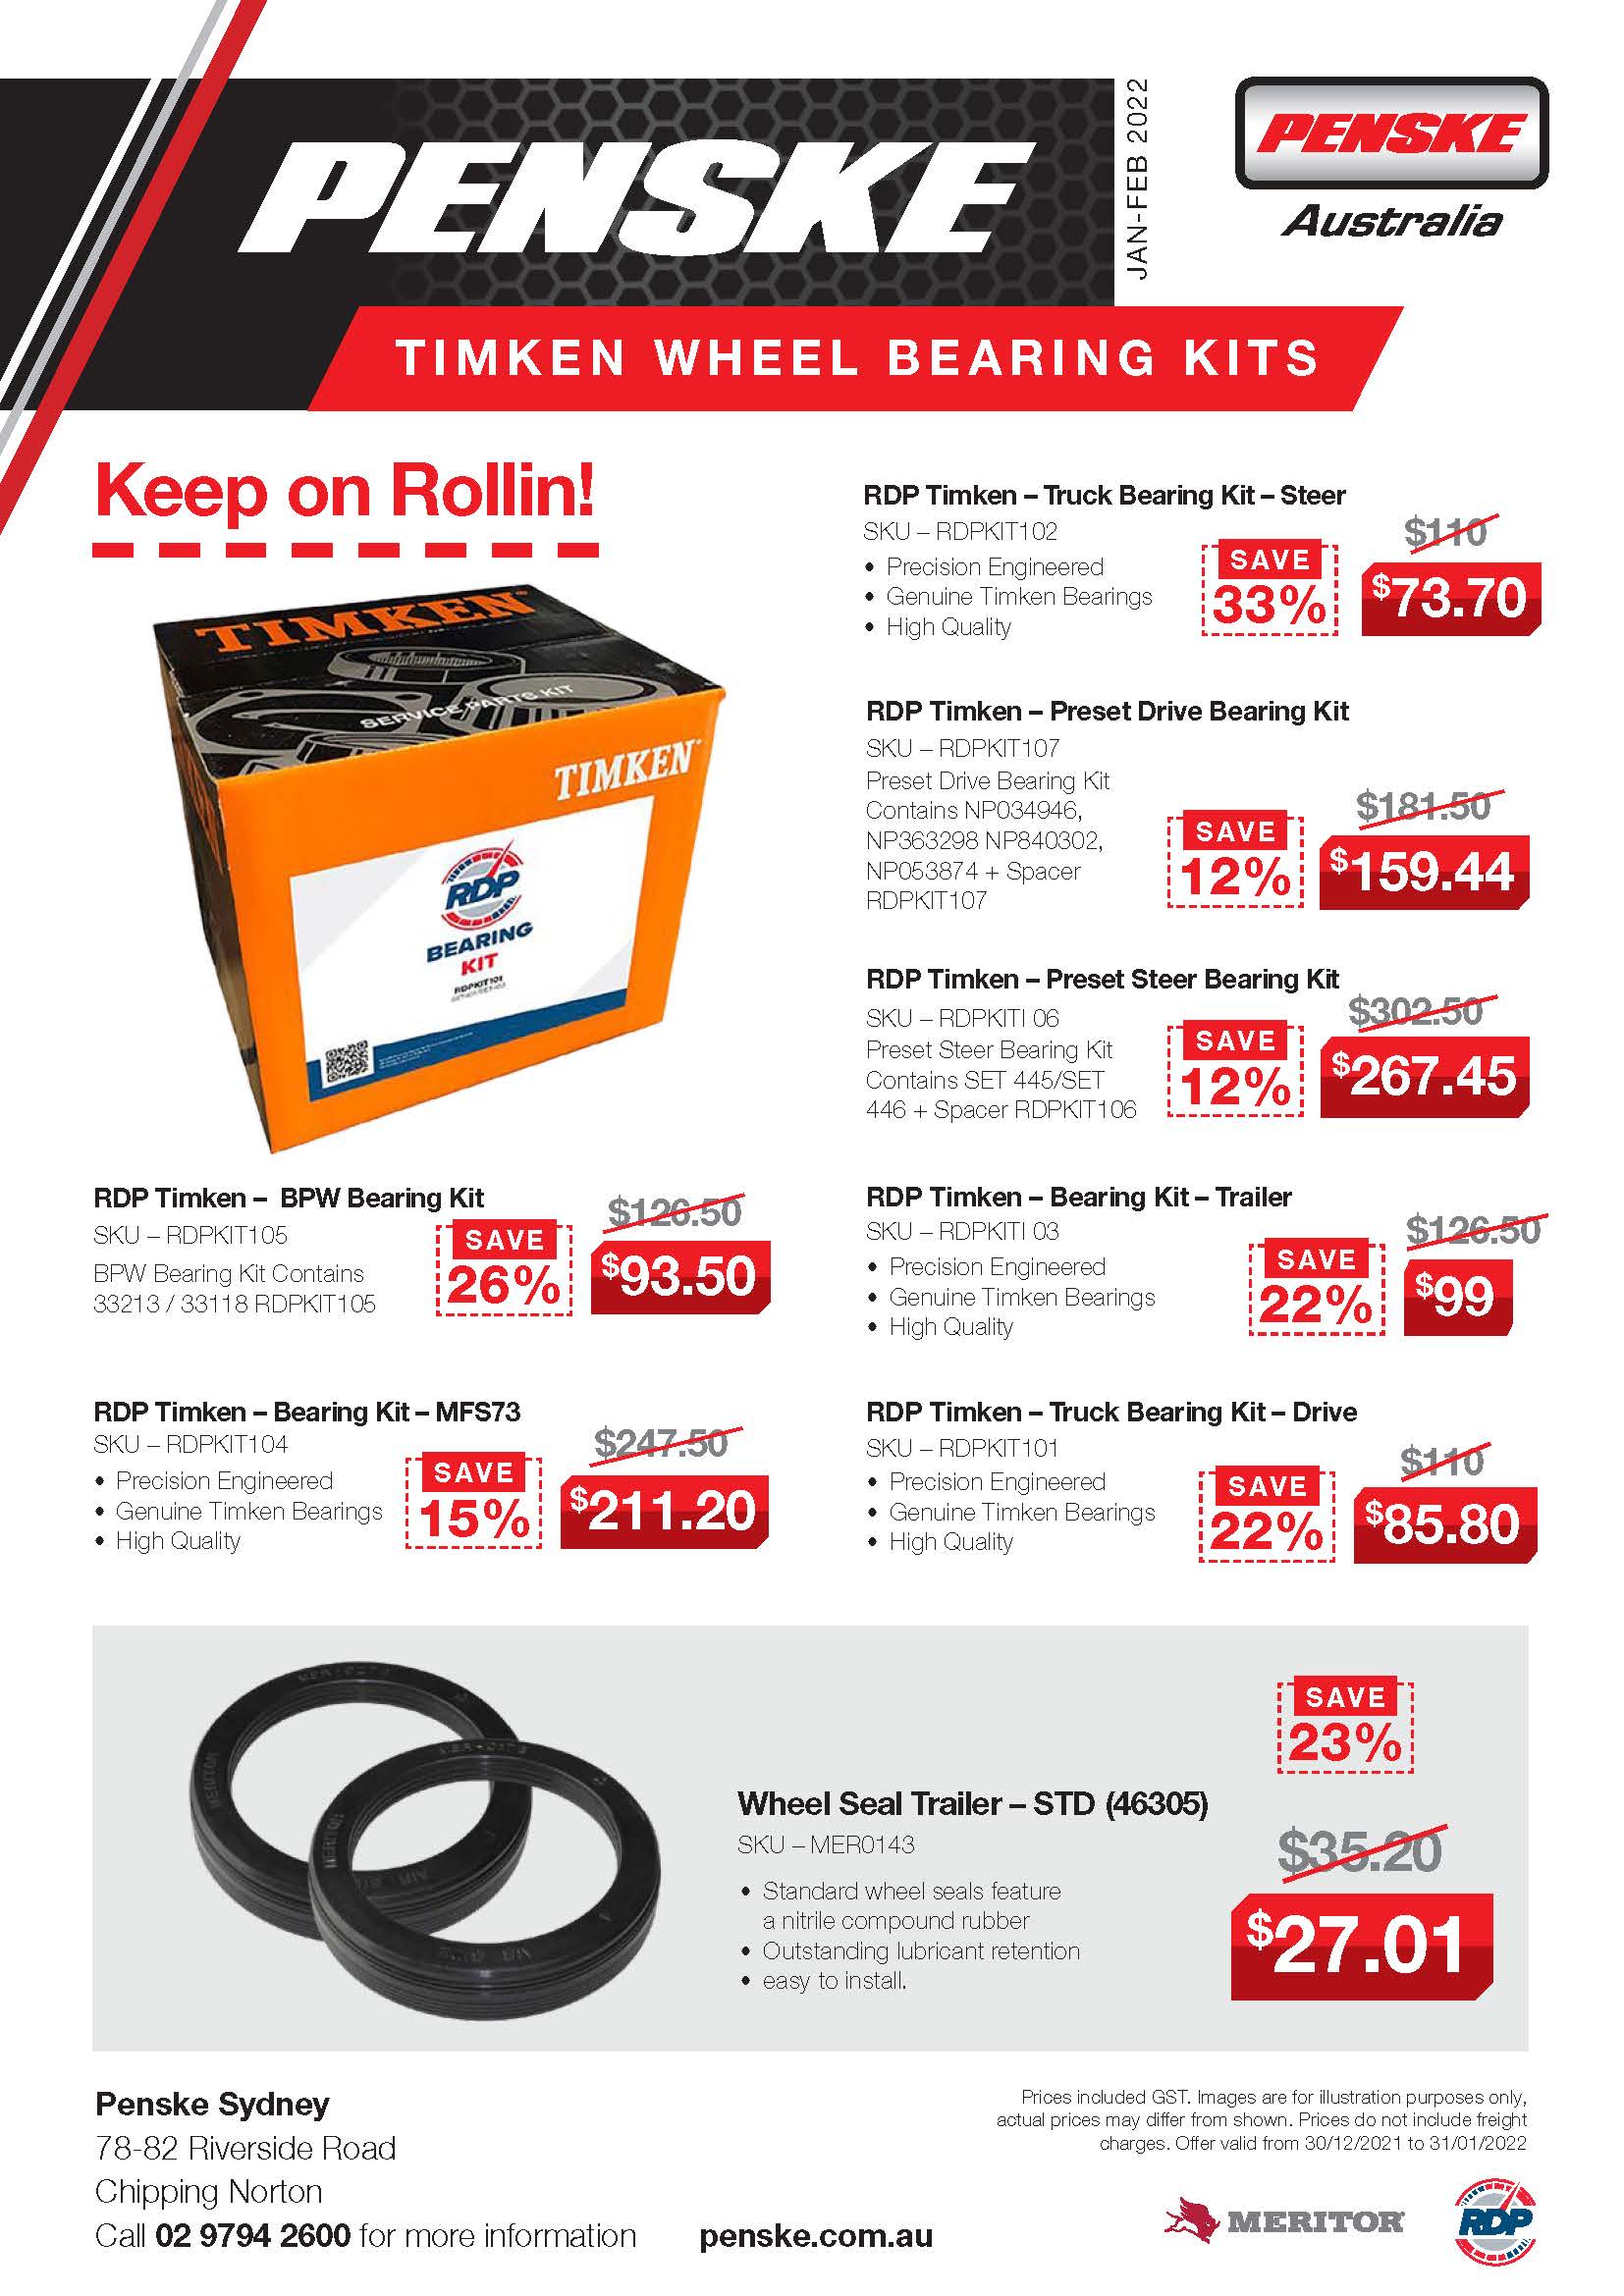 TIMKEN Wheel Bearing Kits